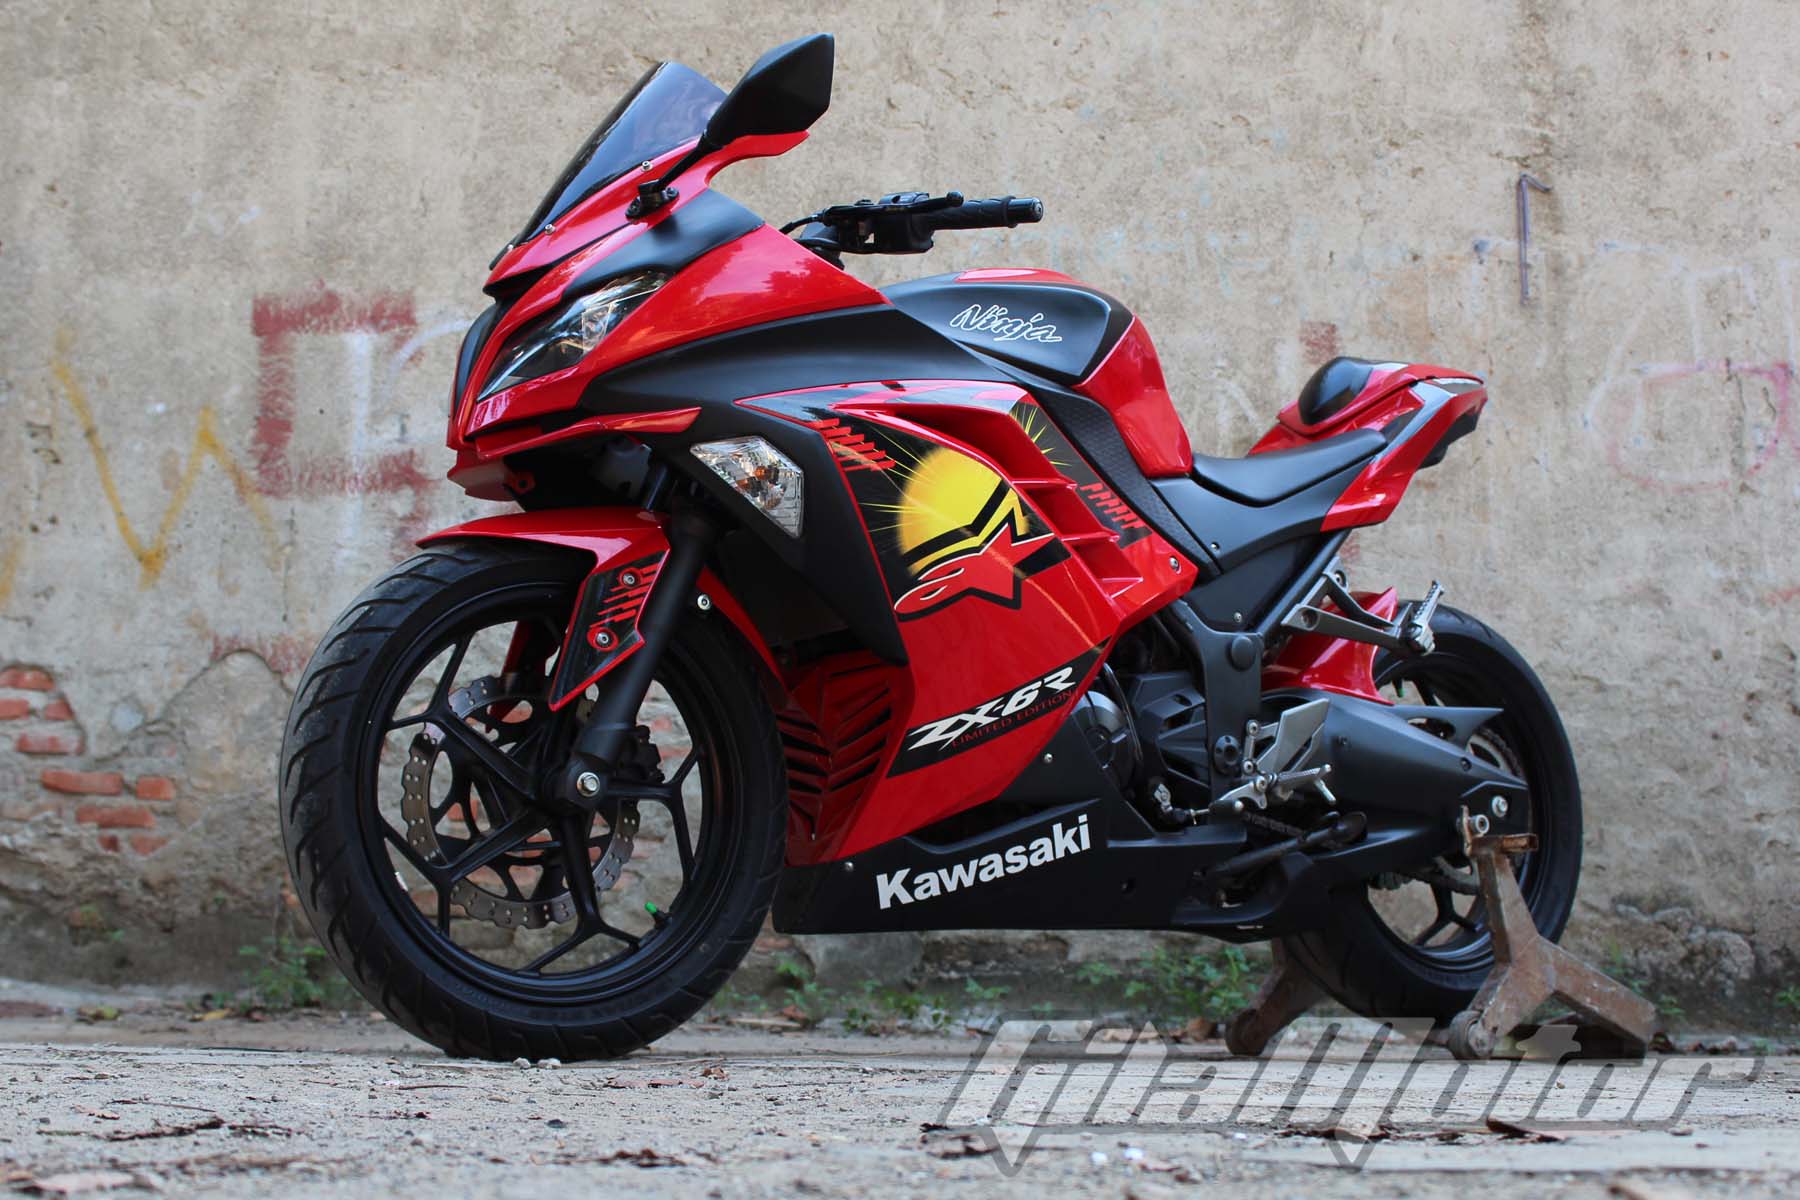 Kawasaki Ninja 250 Fi Tangerang Modifikasi Ringan Ala Bos Body